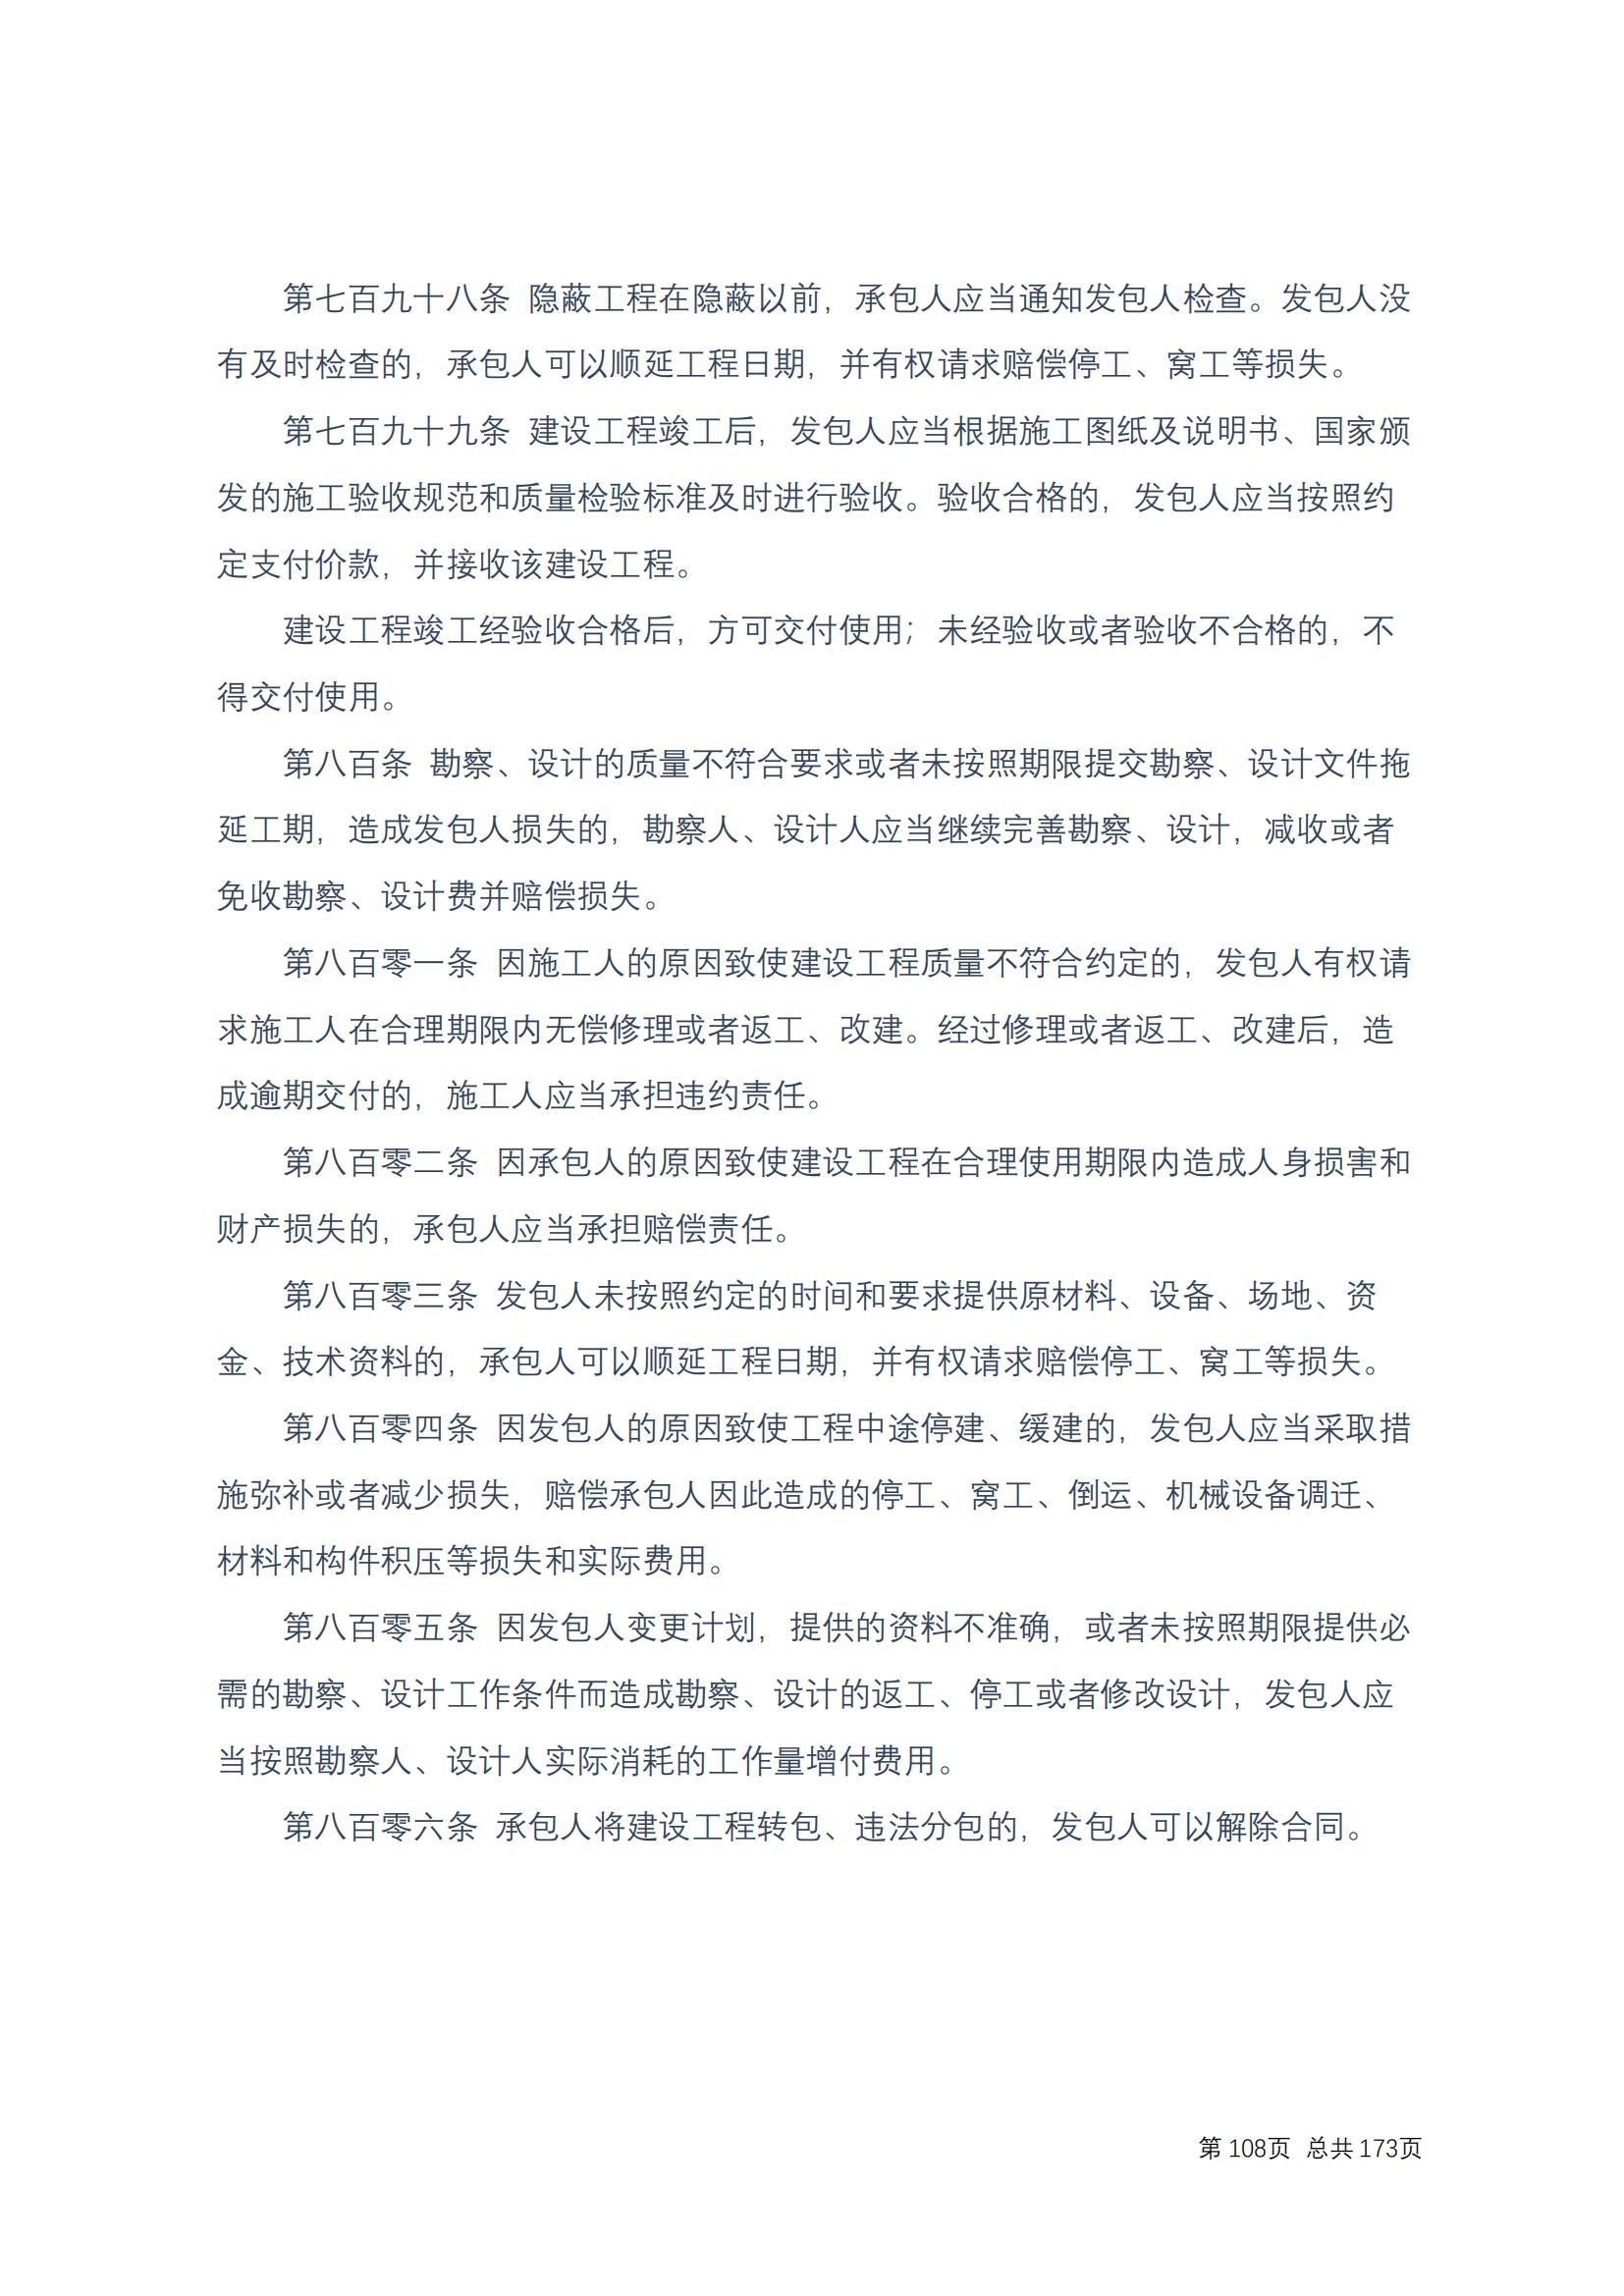 中华人民共和国民法典 修改过_107